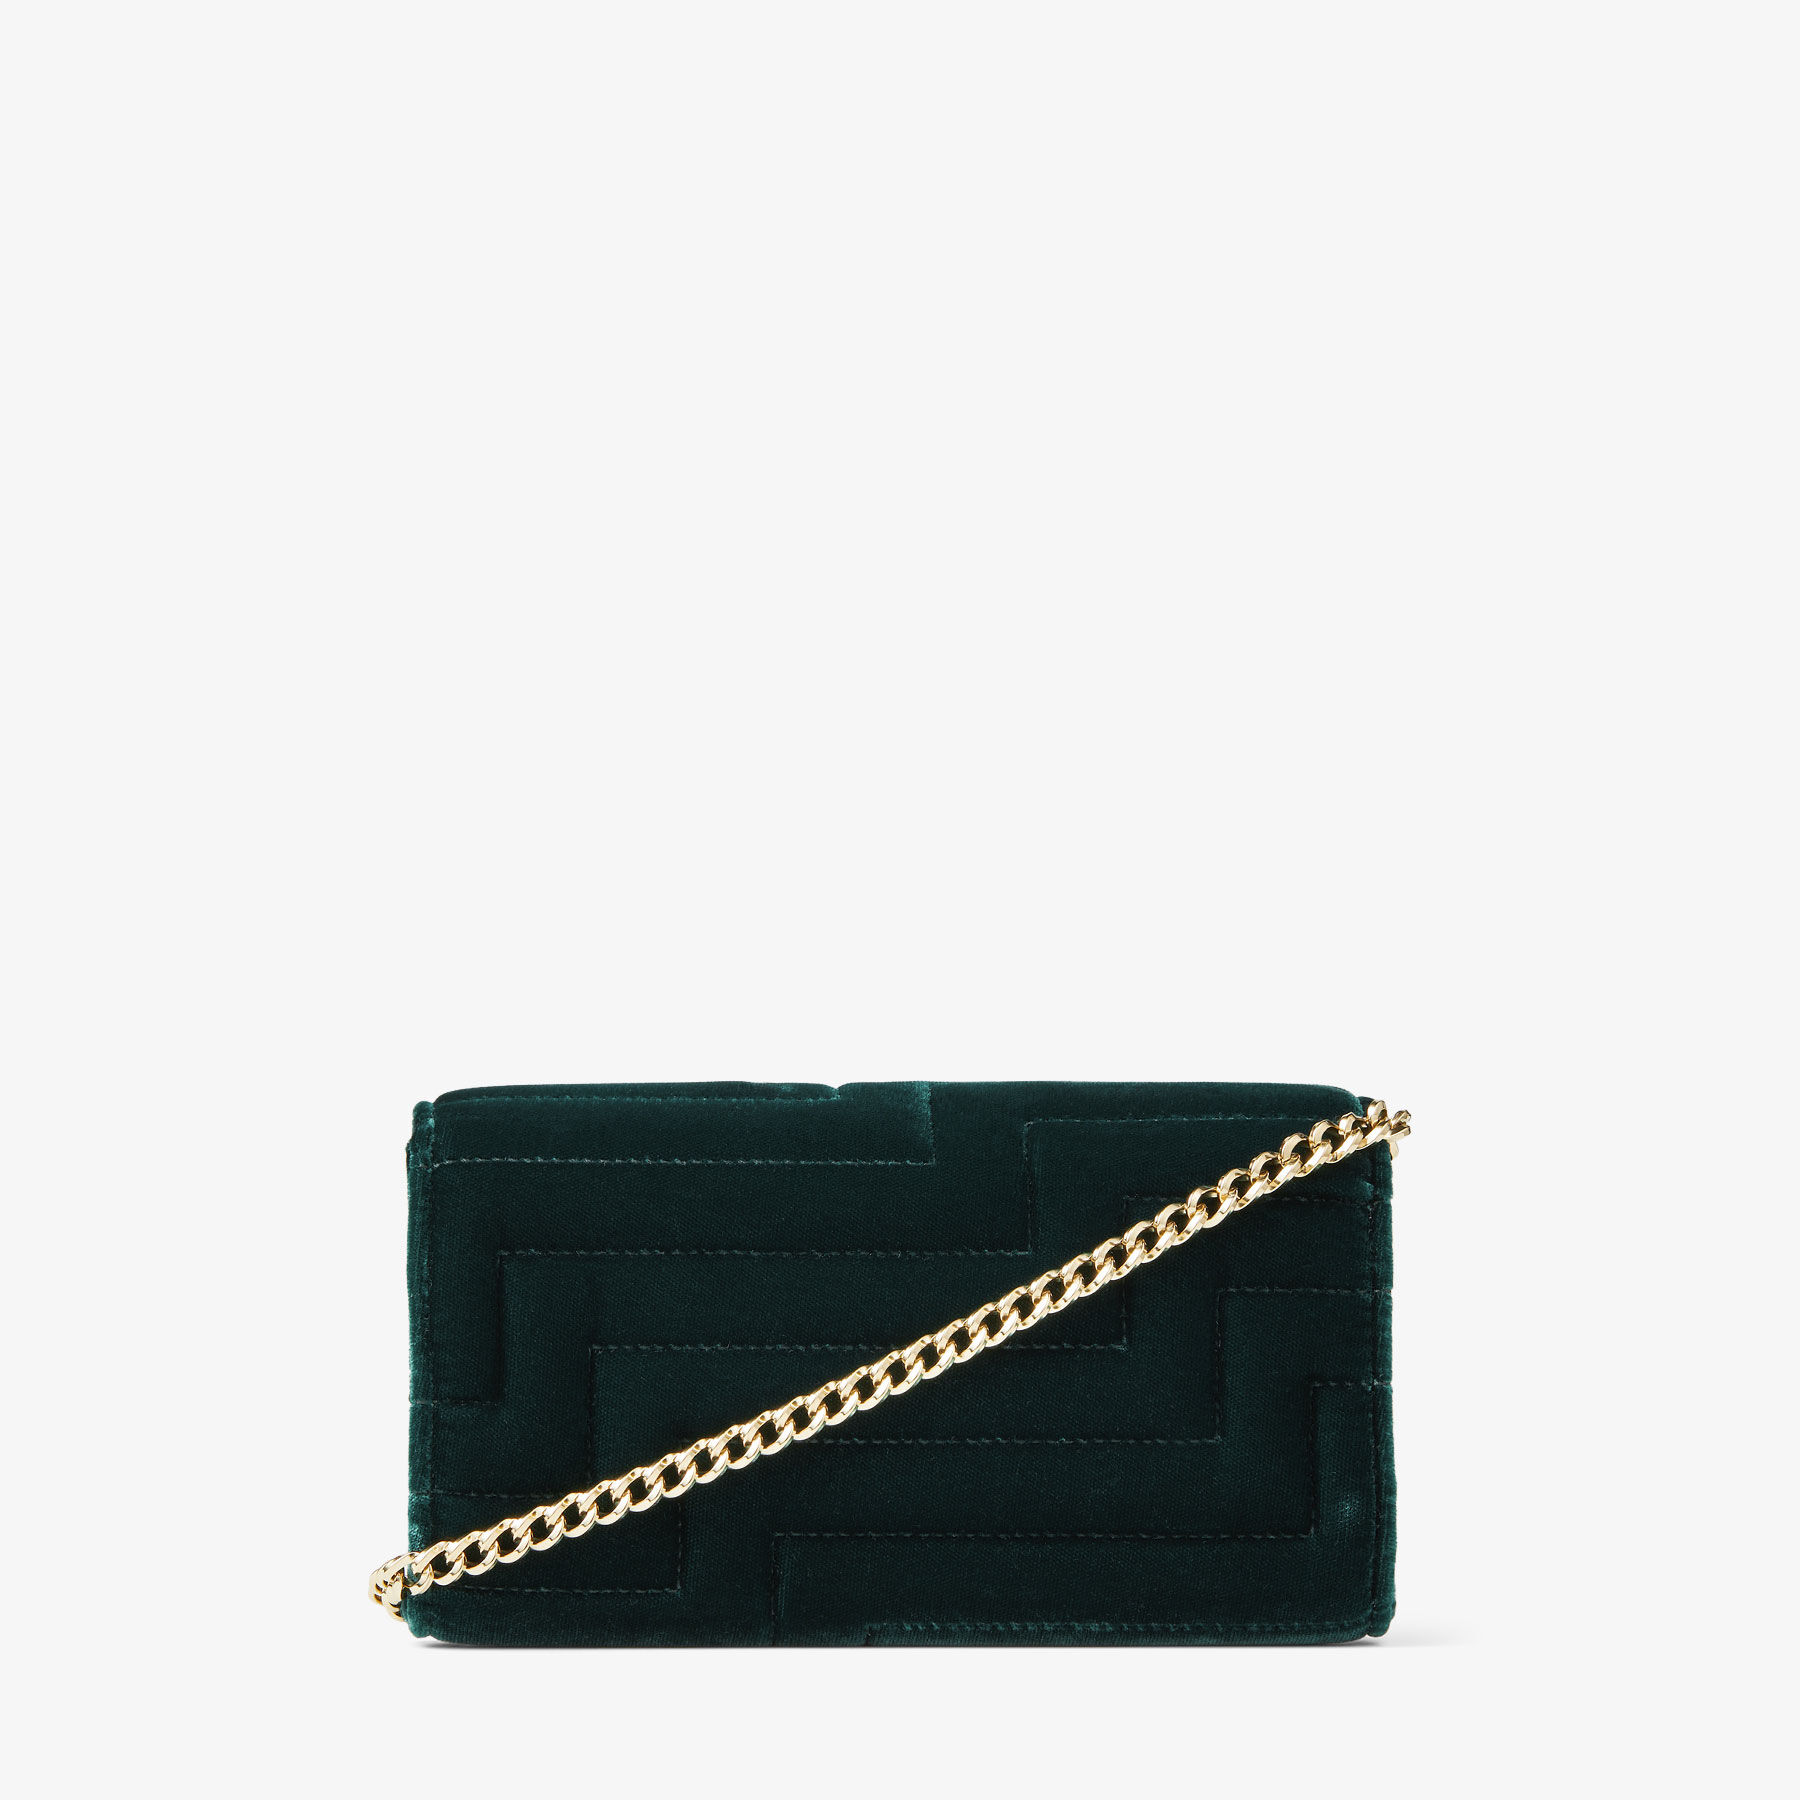 Ms. Green M&M plush purse